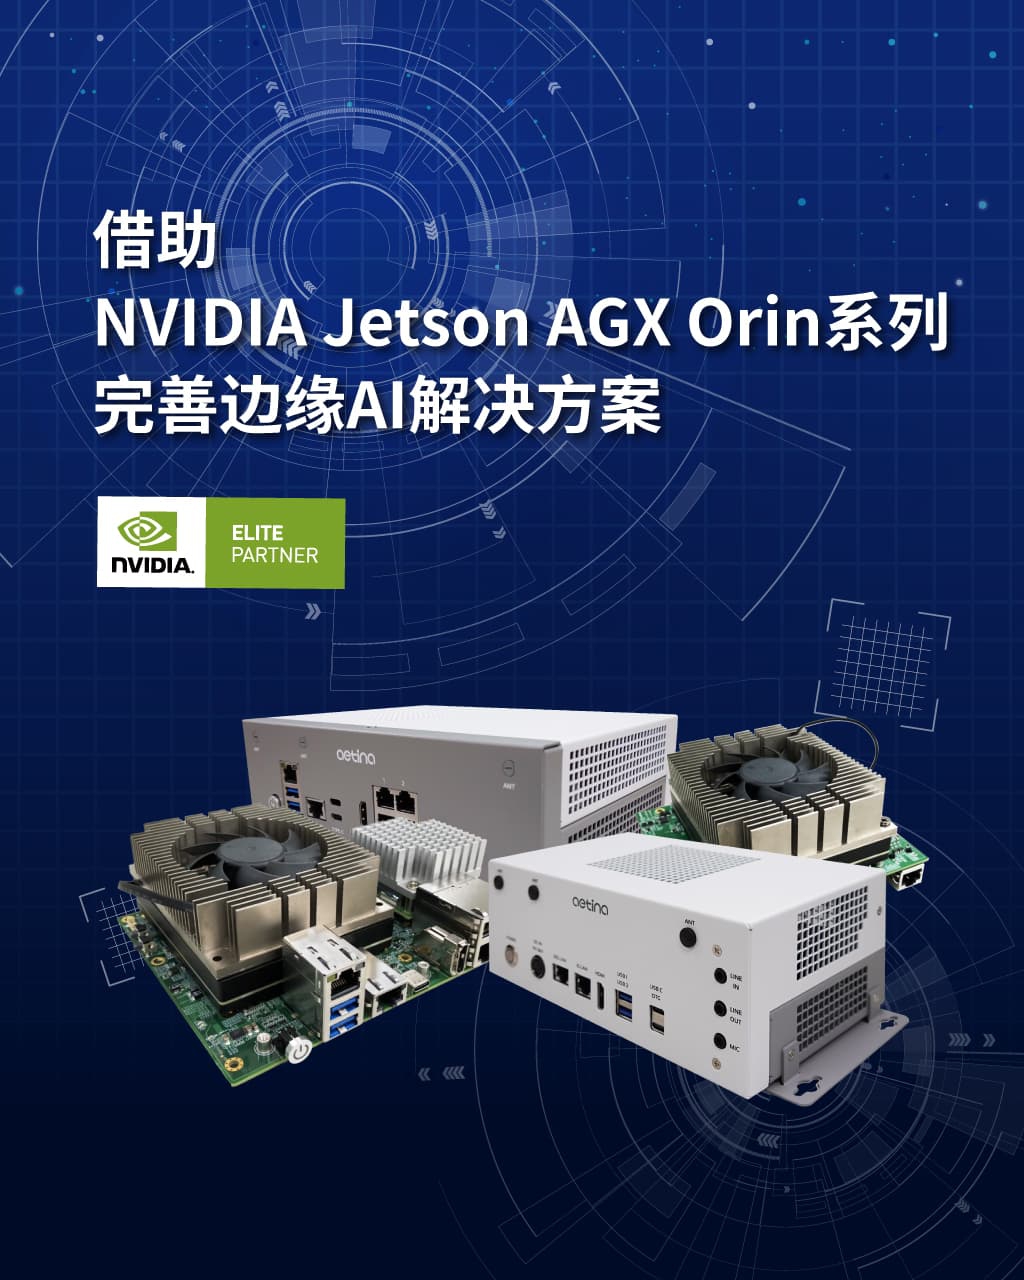 借助NVIDIA Jetson AGX Orin系列 完善边缘AI解决方案